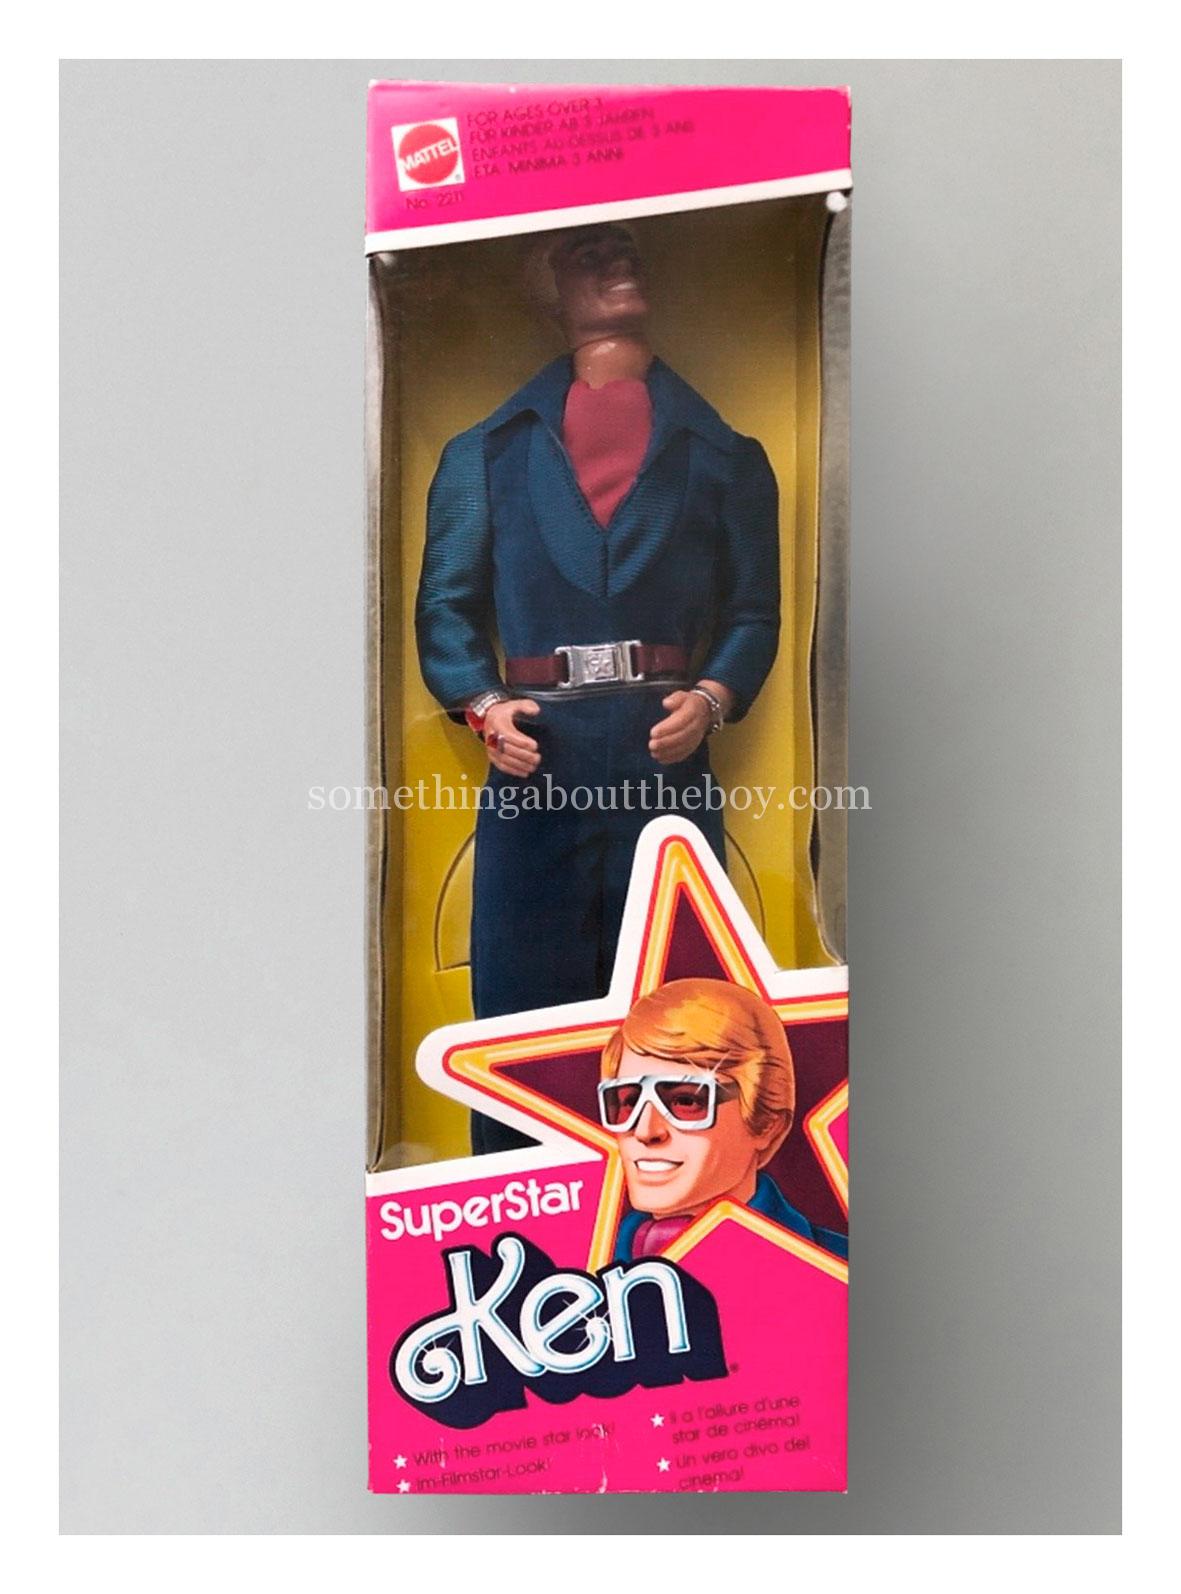 1978 #2211 SuperStar Ken (European version)